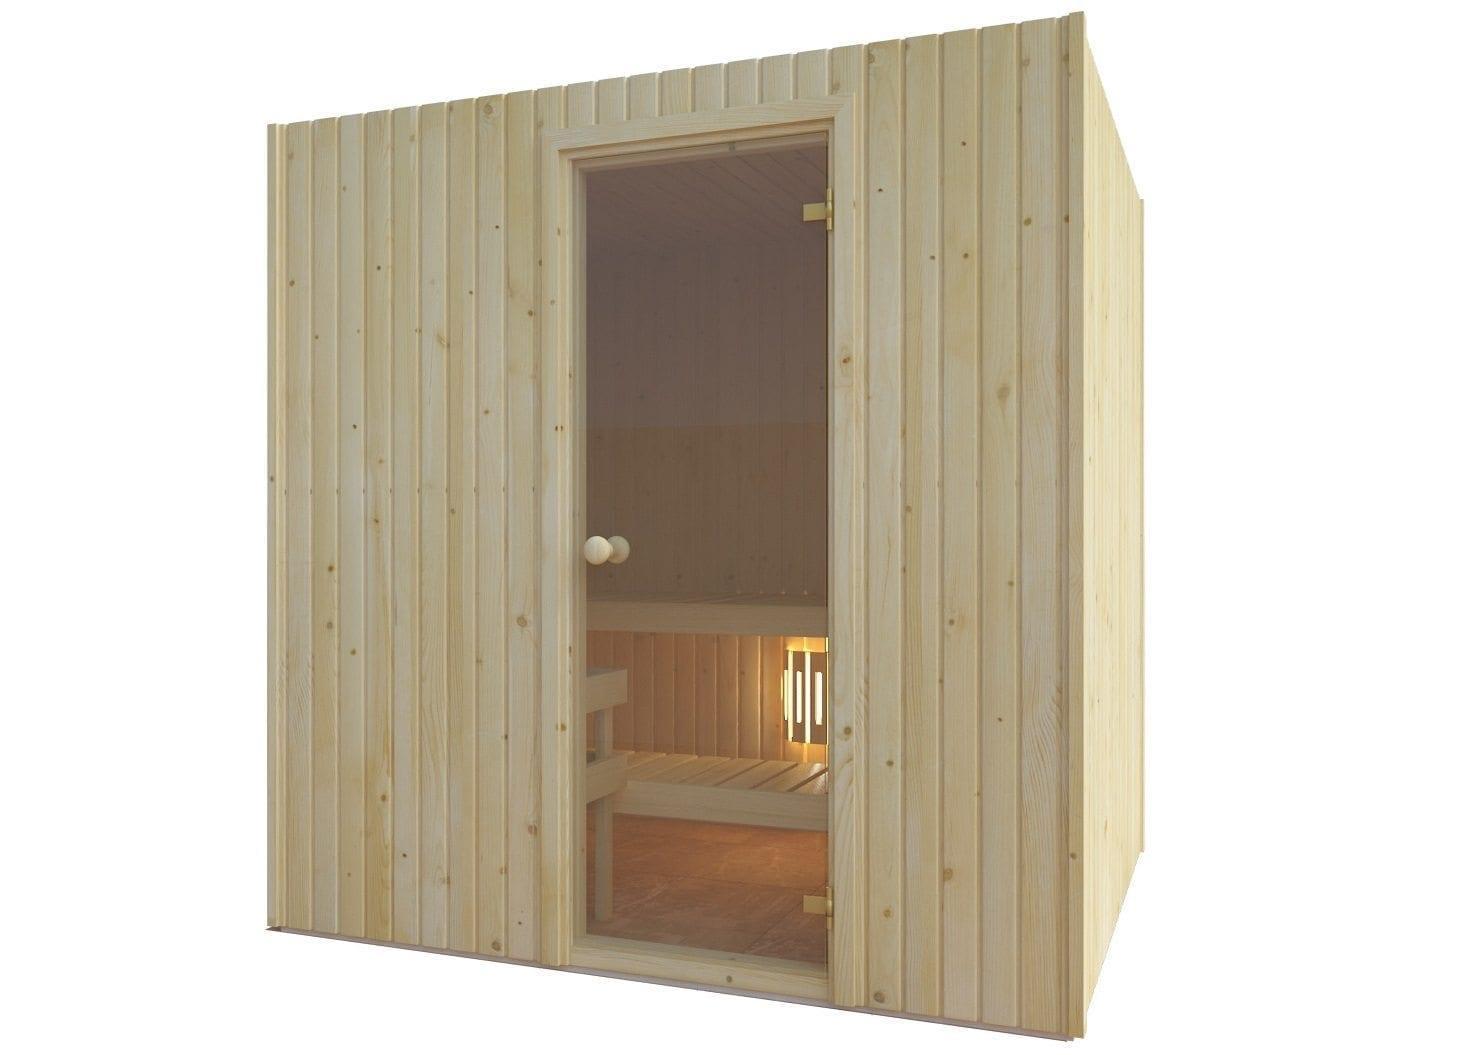 Ouderling Zwijgend Volwassen Zelf een sauna bouwen: hoe begin je eraan? | Abisco